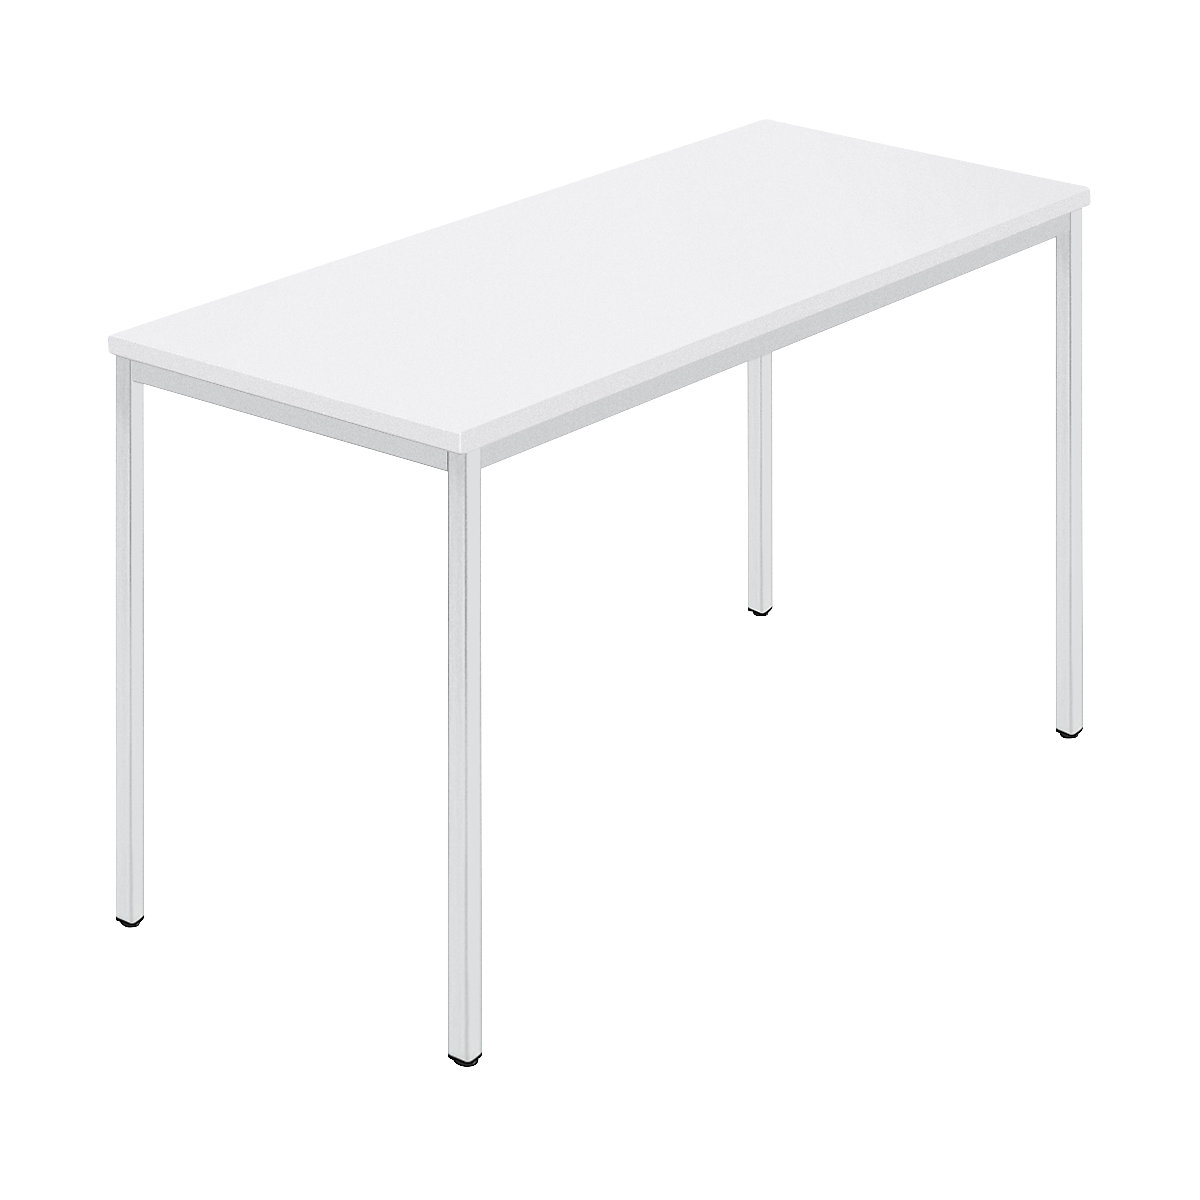 Stół prostokątny, czworokątna rurka lakierowana, szer. x głęb. 1200 x 600 mm, biały / szary-8